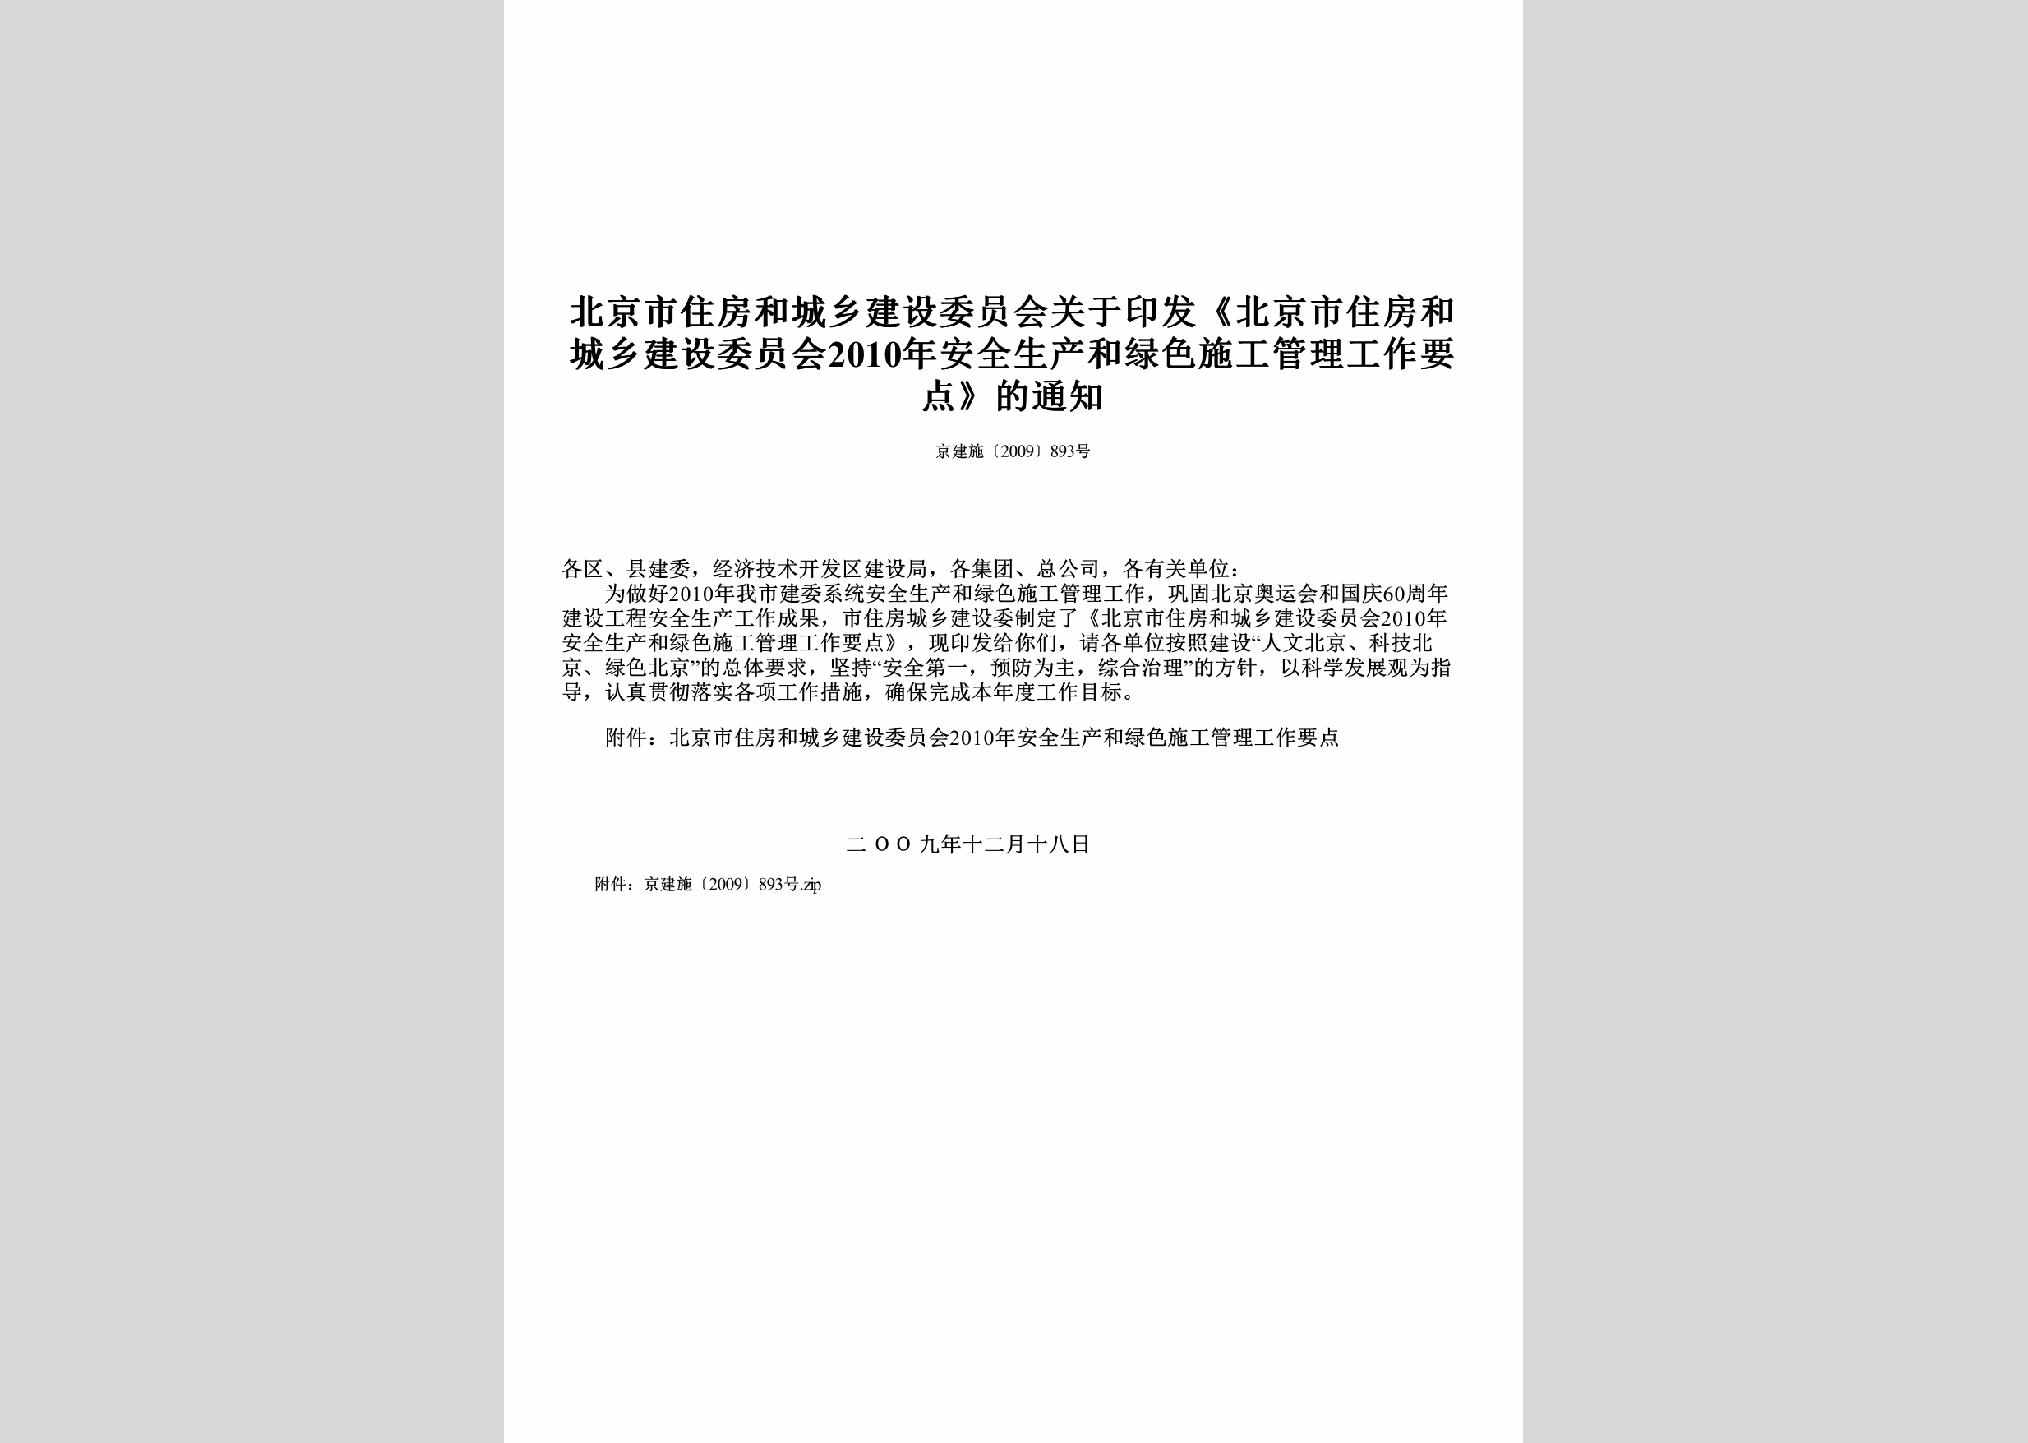 京建施[2009]893号：关于印发《北京市住房和城乡建设委员会2010年安全生产和绿色施工管理工作要点》的通知